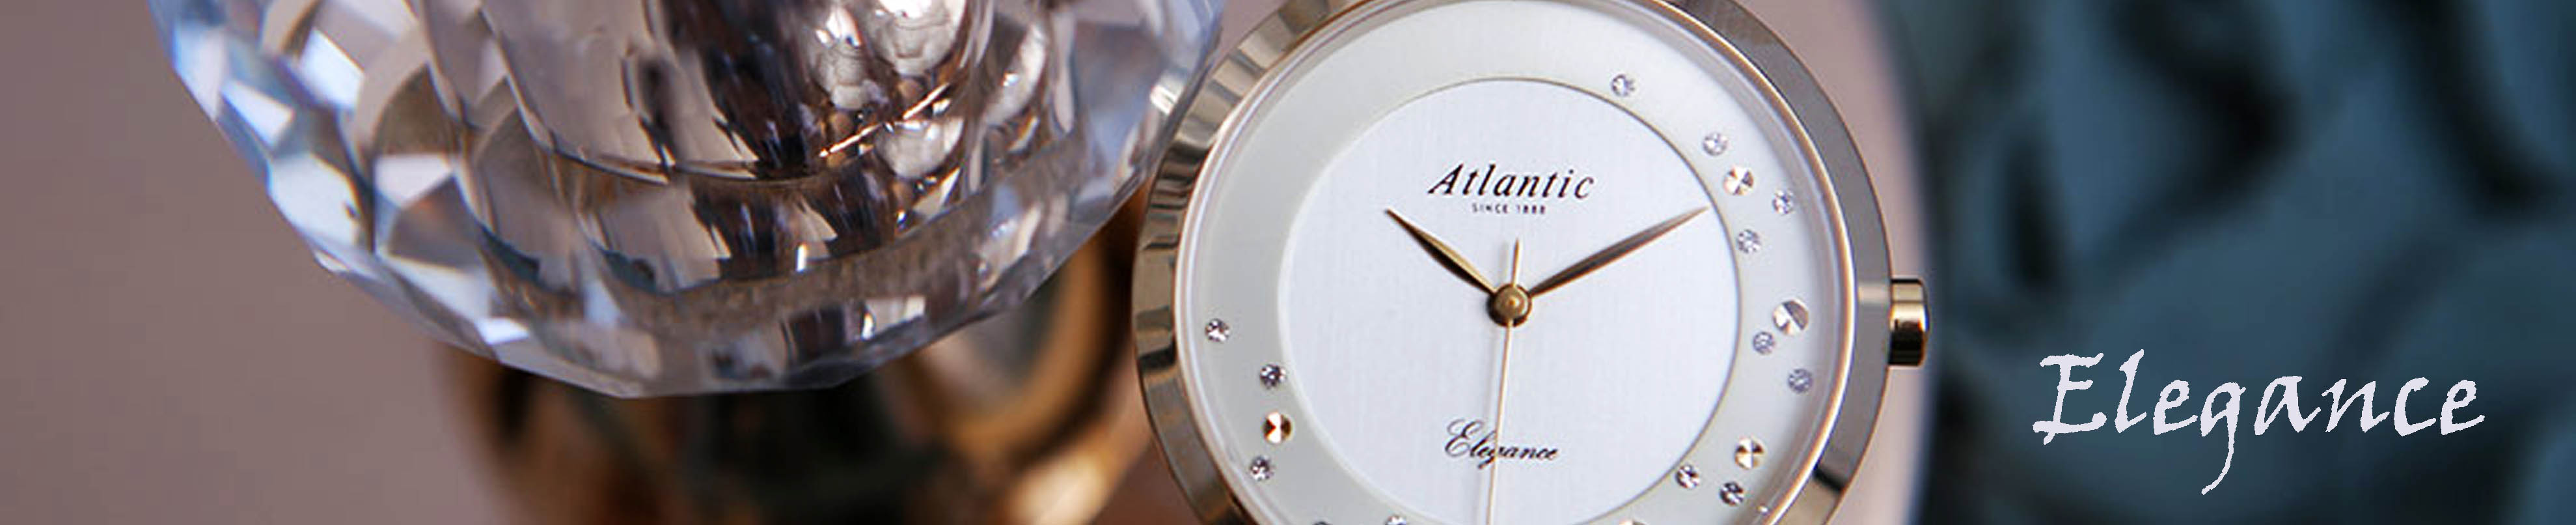 zegarki Atlantic Elegance